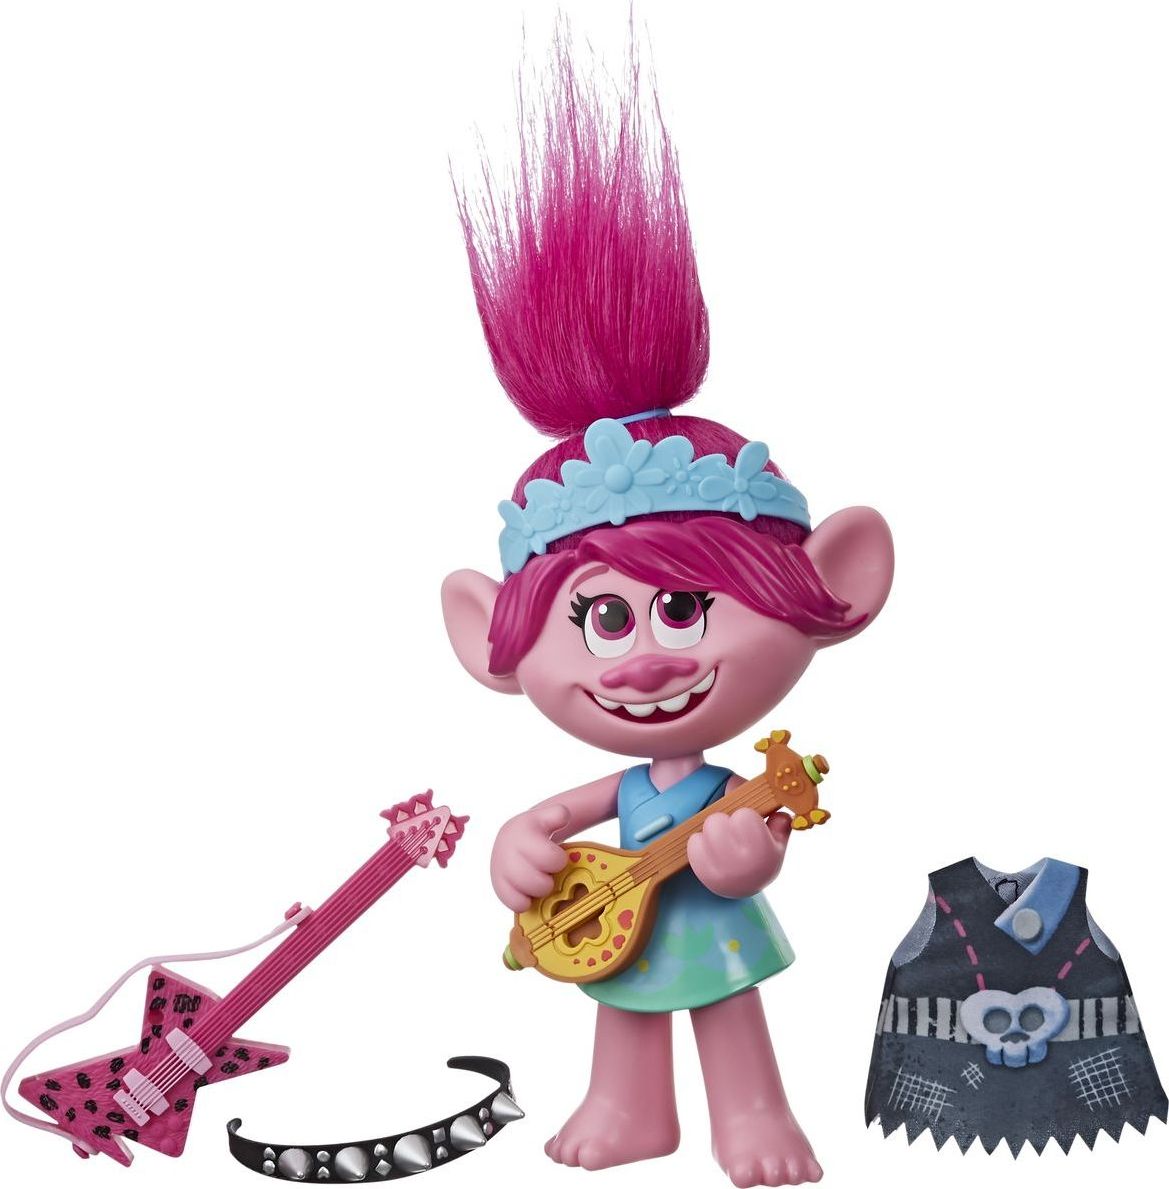 Hasbro Trolls zpívající figurka Poppy s rockovým příslušentvím - obrázek 1